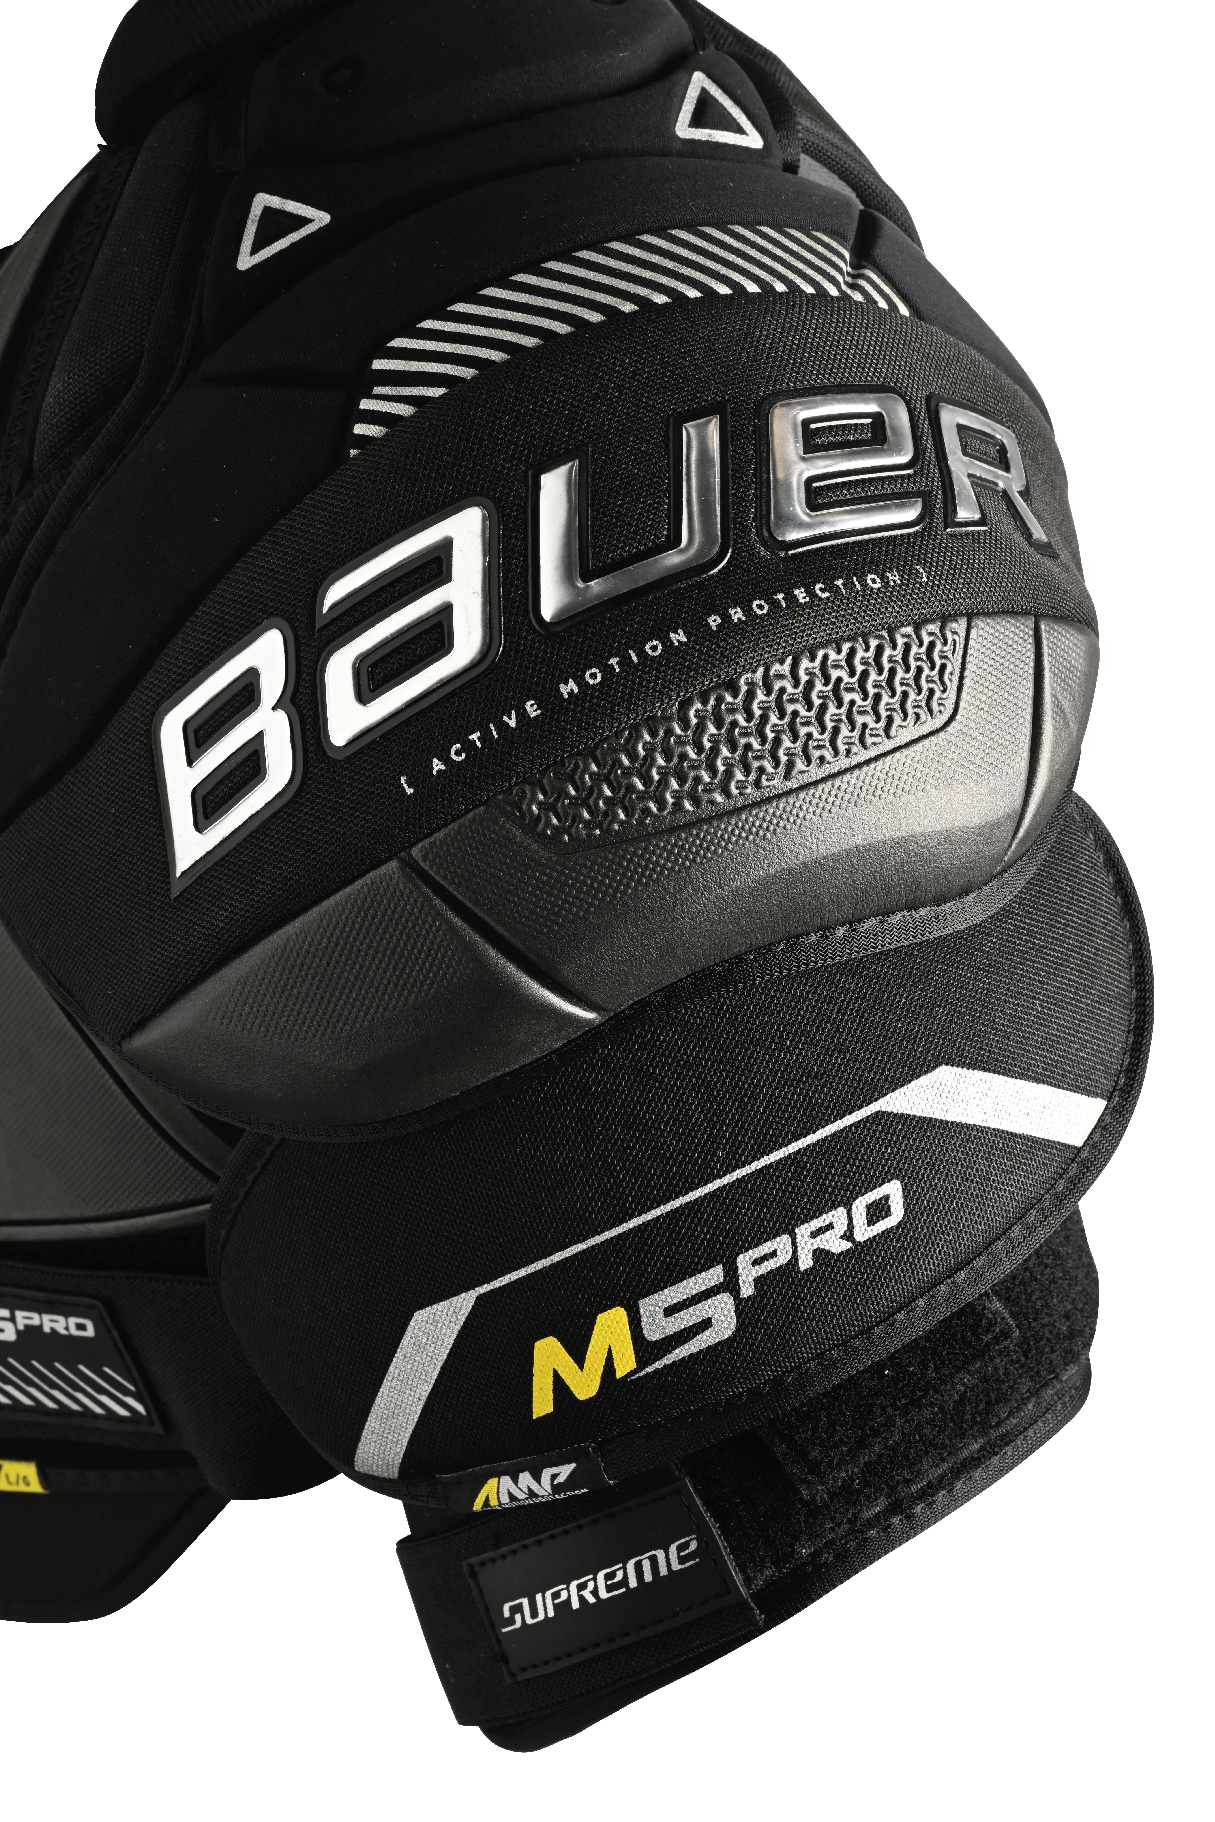 Bauer Supreme M5 Pro Senior Shoulder Pads